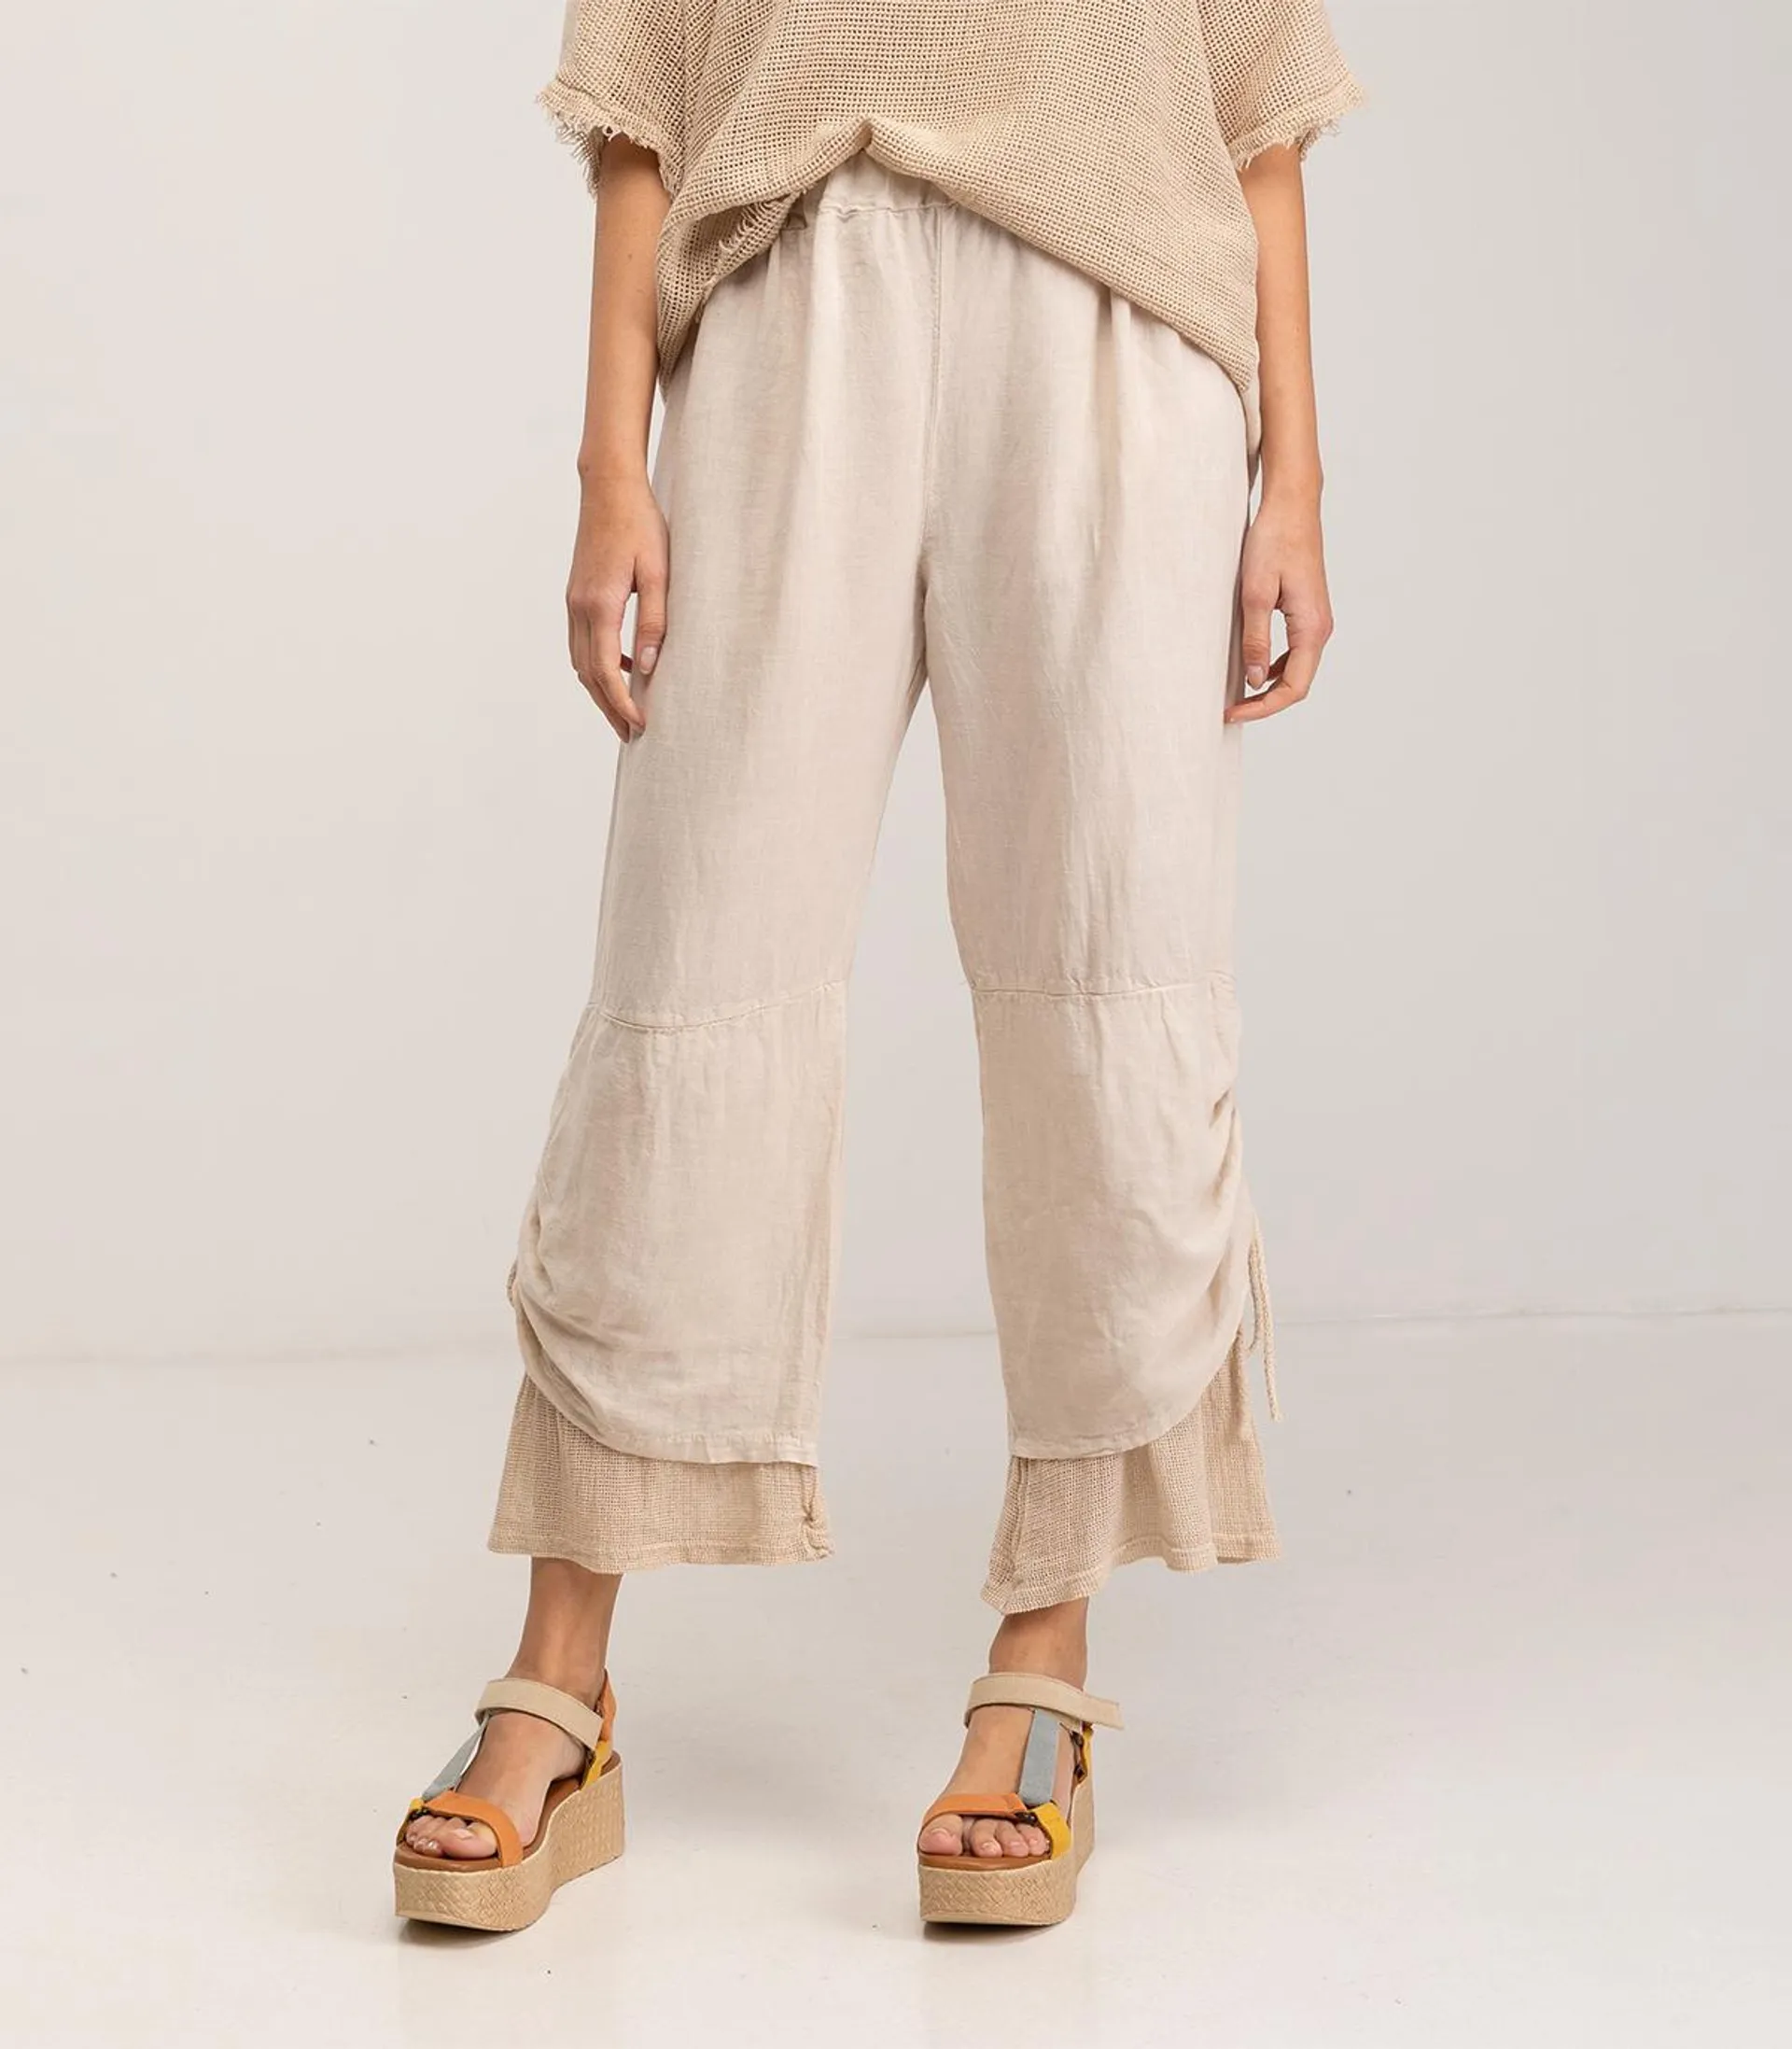 Pantalon ancho en mezcla de lino y algodón de tiro alto y cintura elástica con cordón ajustable en el bajo Beige